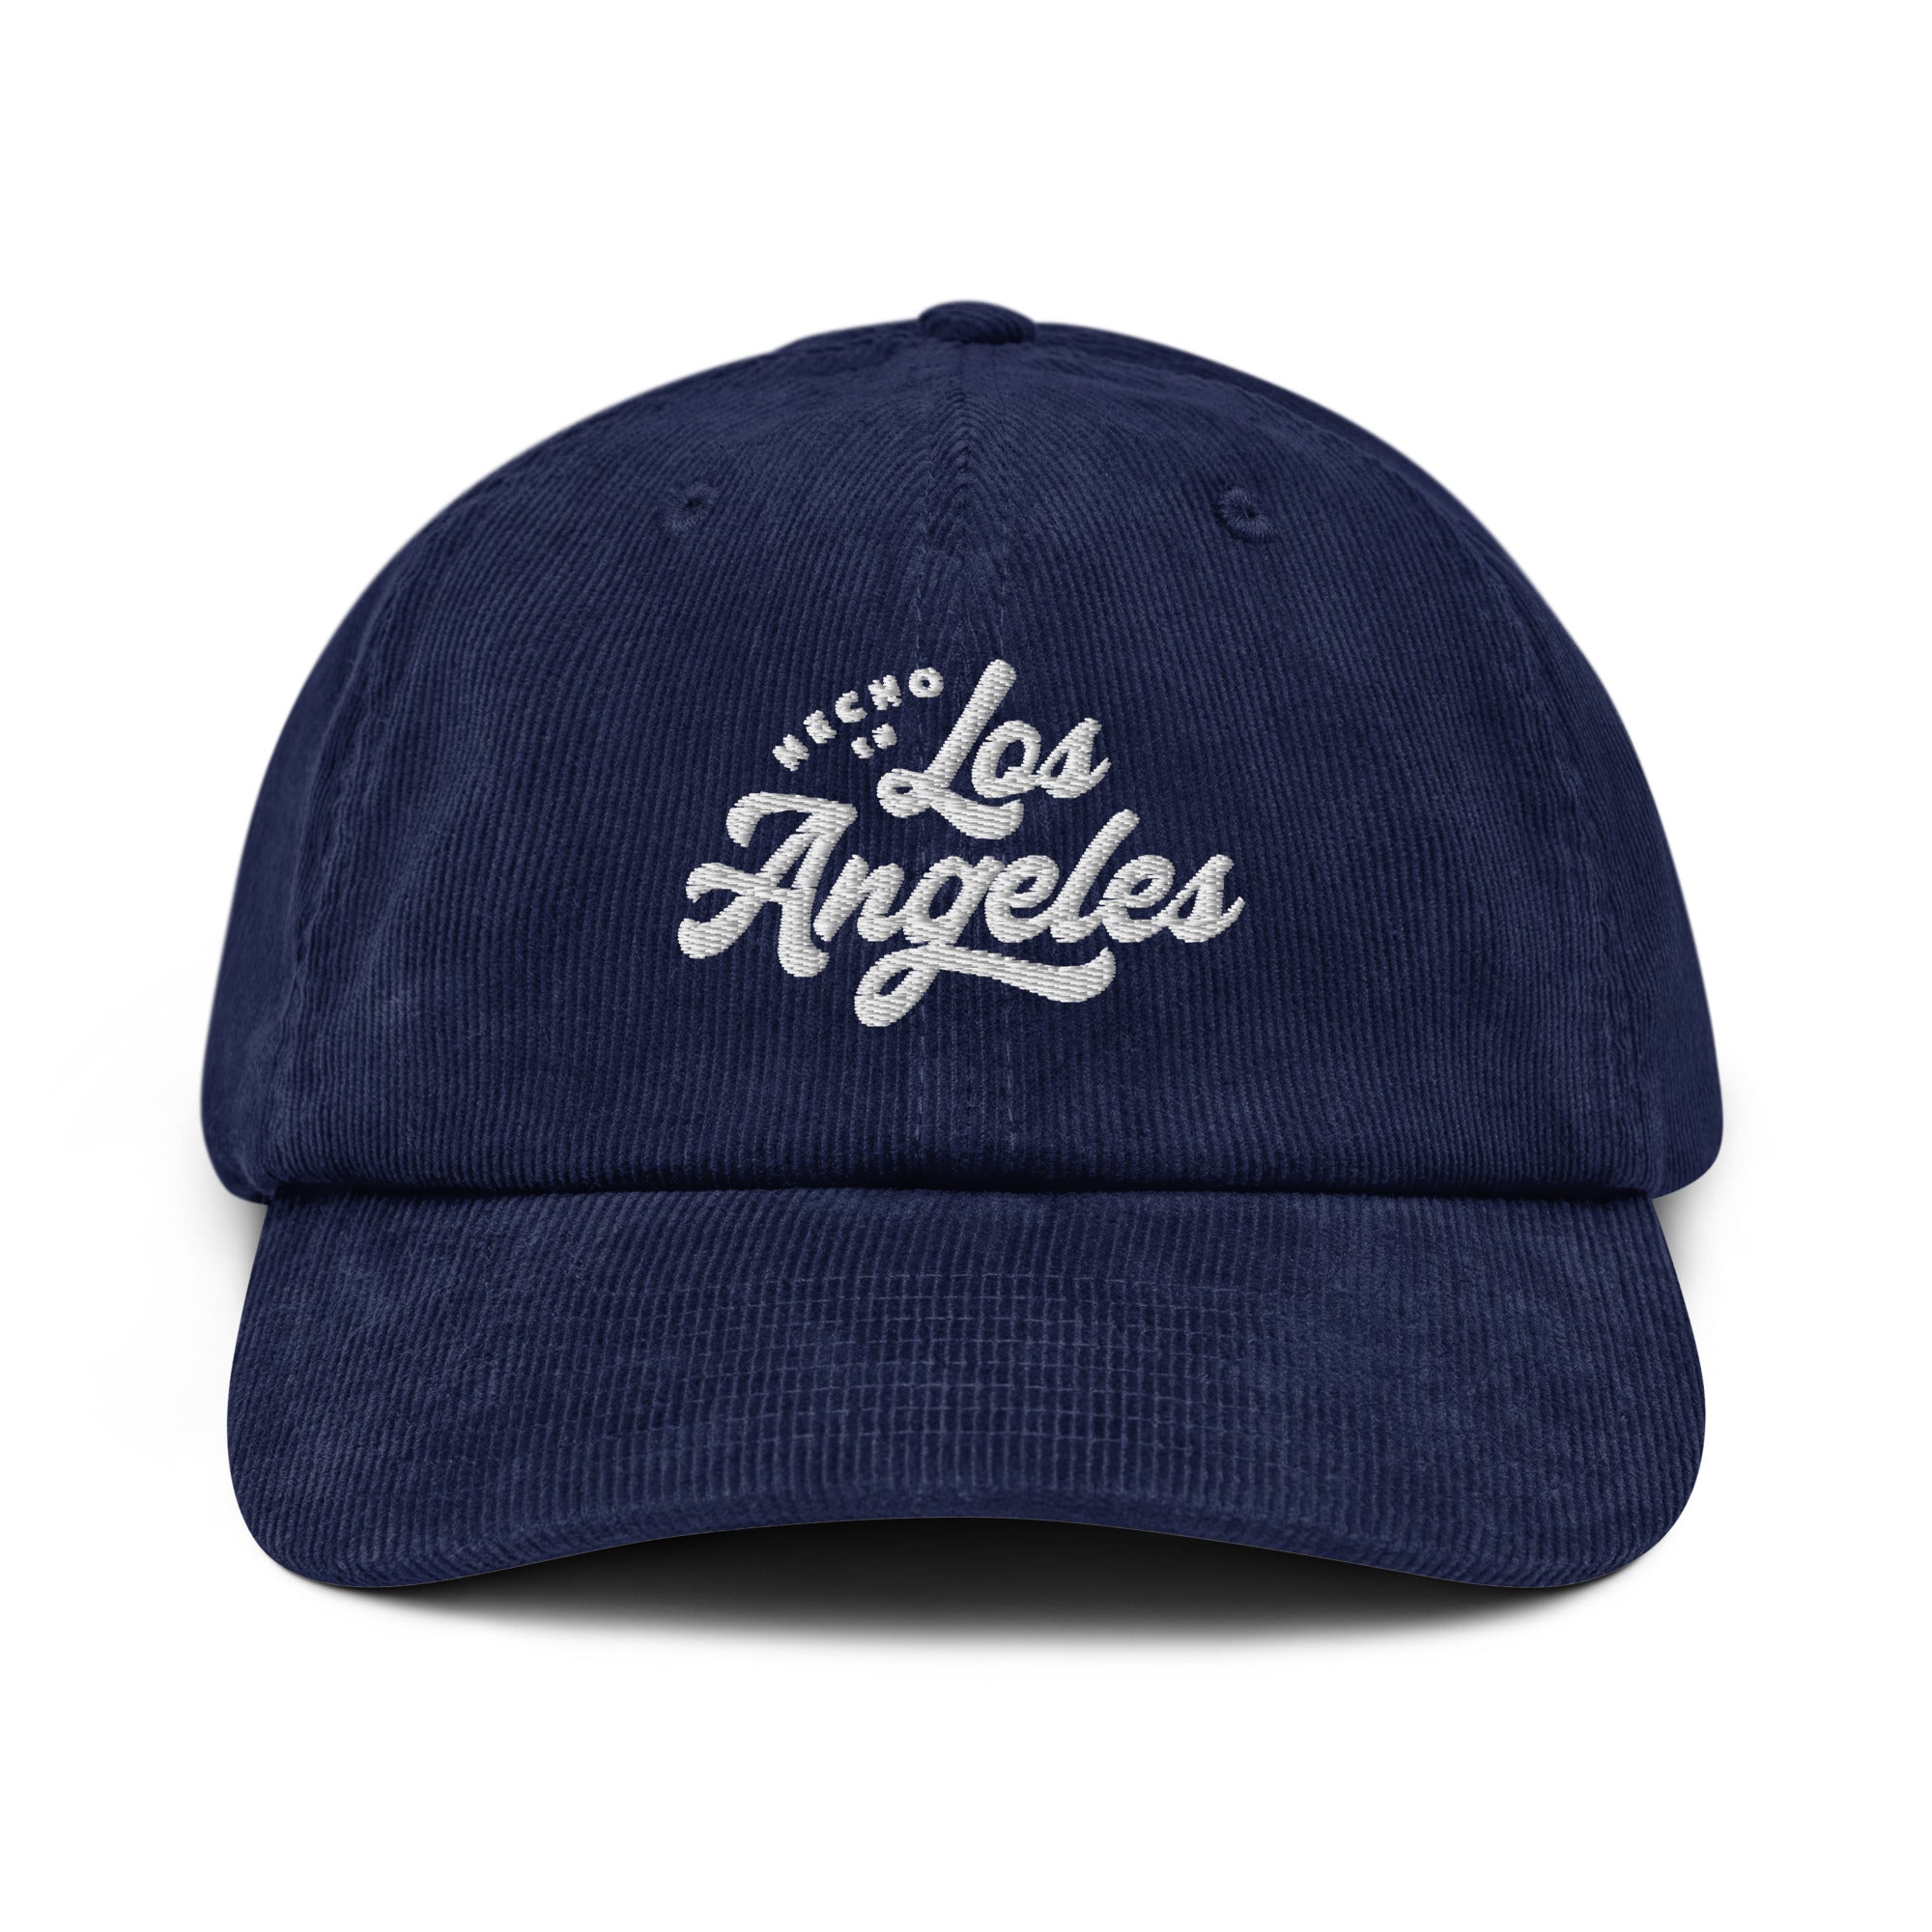 Hecho En Los Angeles Corduroy hat